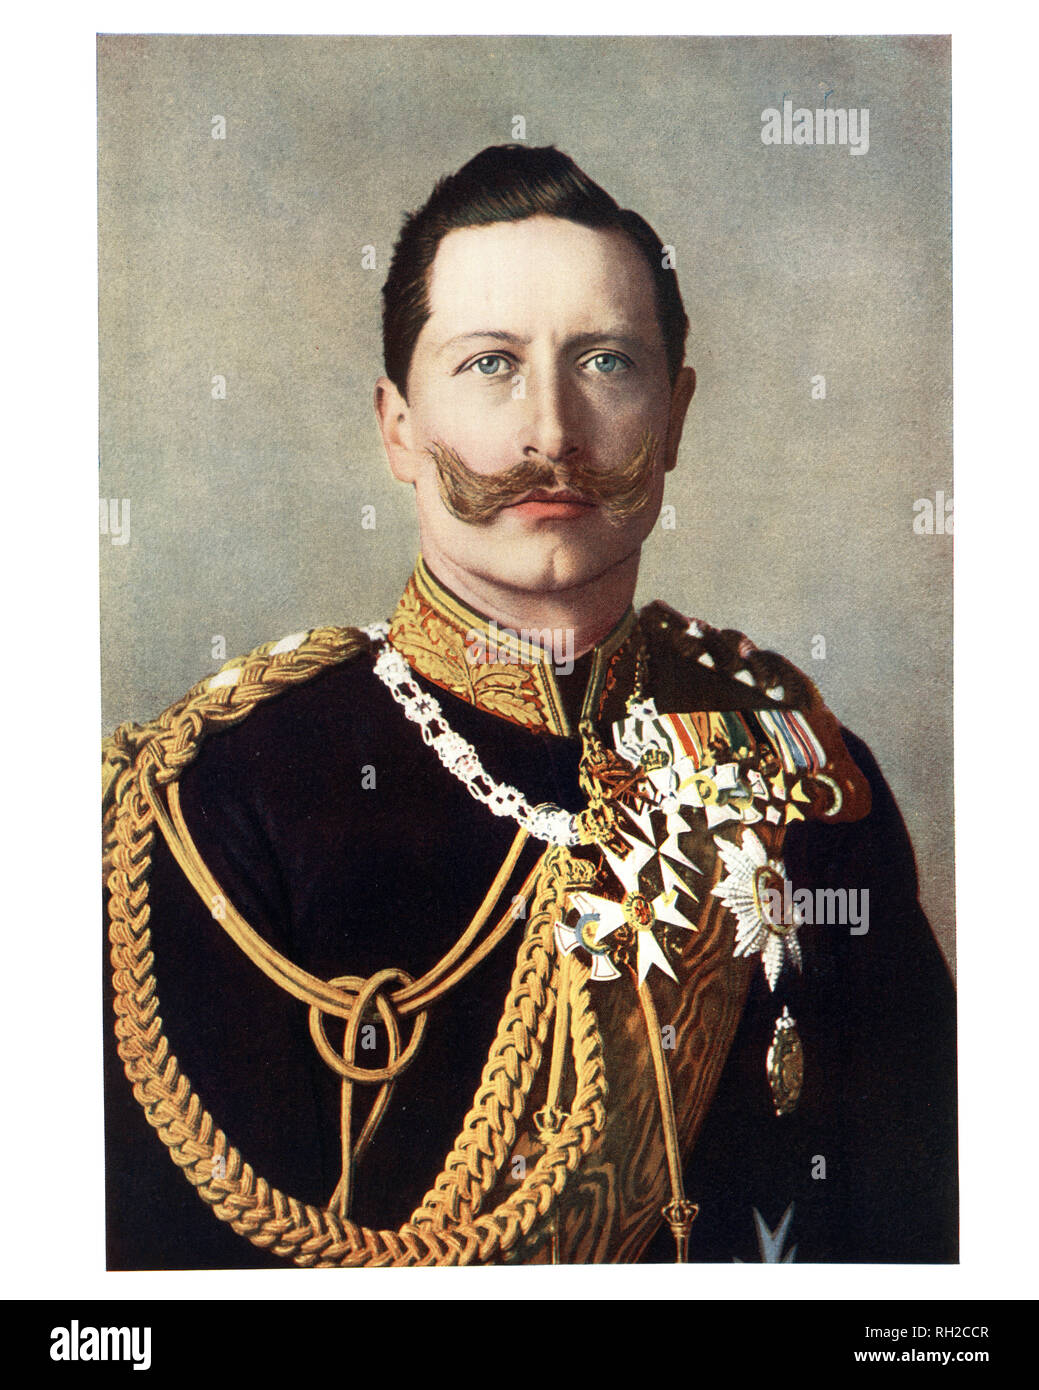 Der Deutsche Kaiser Wilhelm II., der letzte deutsche Kaiser (Kaiser), König von Preußen, Regierende, vom 15. Juni 1888 bis zu seinem Rücktritt am 9. November 1918 Stockfoto